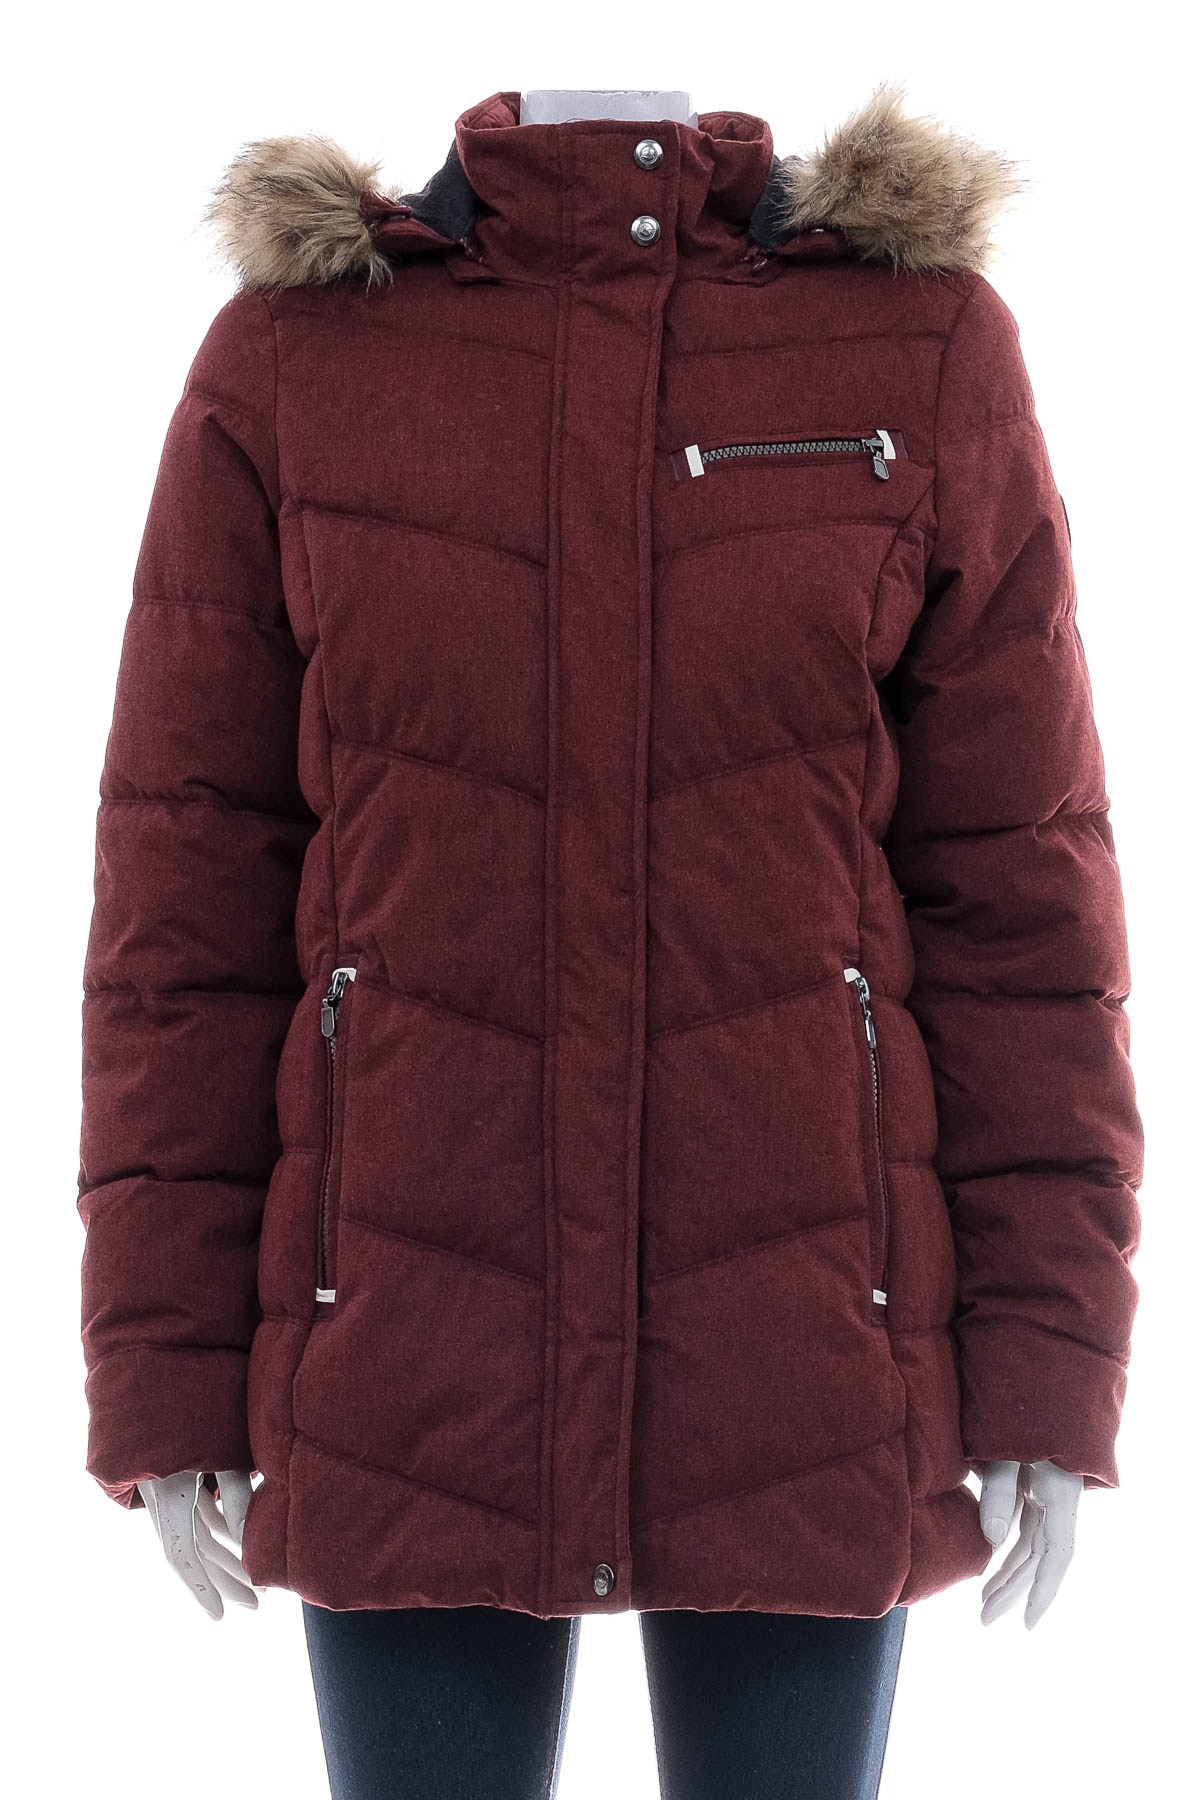 Female jacket - POLARINO - 0